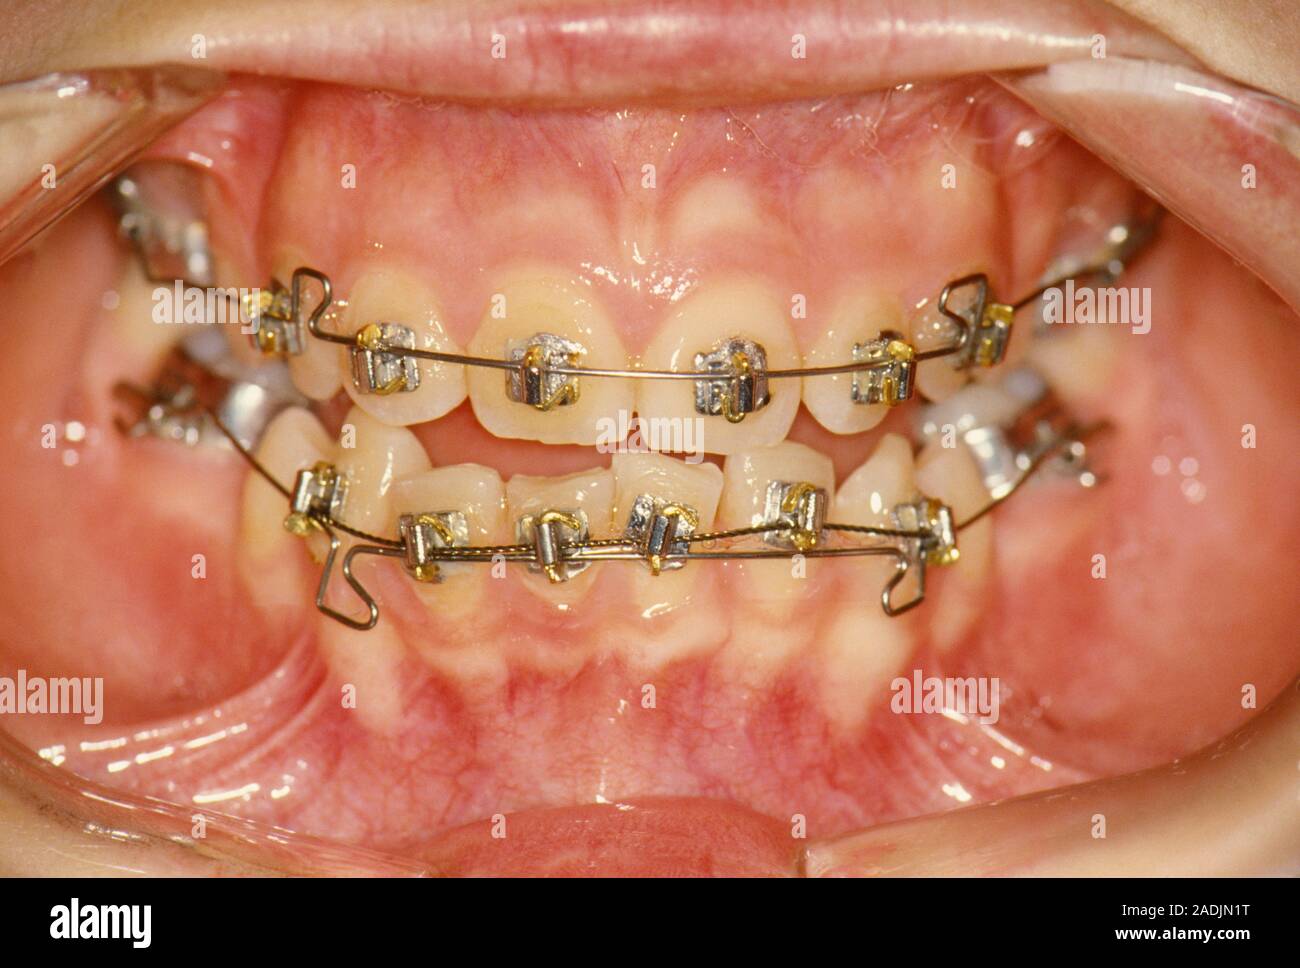 Abrazaderas dentales. Close-up de frenos ortodónticos fijos a los dientes  de un paciente. La boca se mantiene abierta con retractores dental. Los  dientes incisivos inferiores son p Fotografía de stock - Alamy